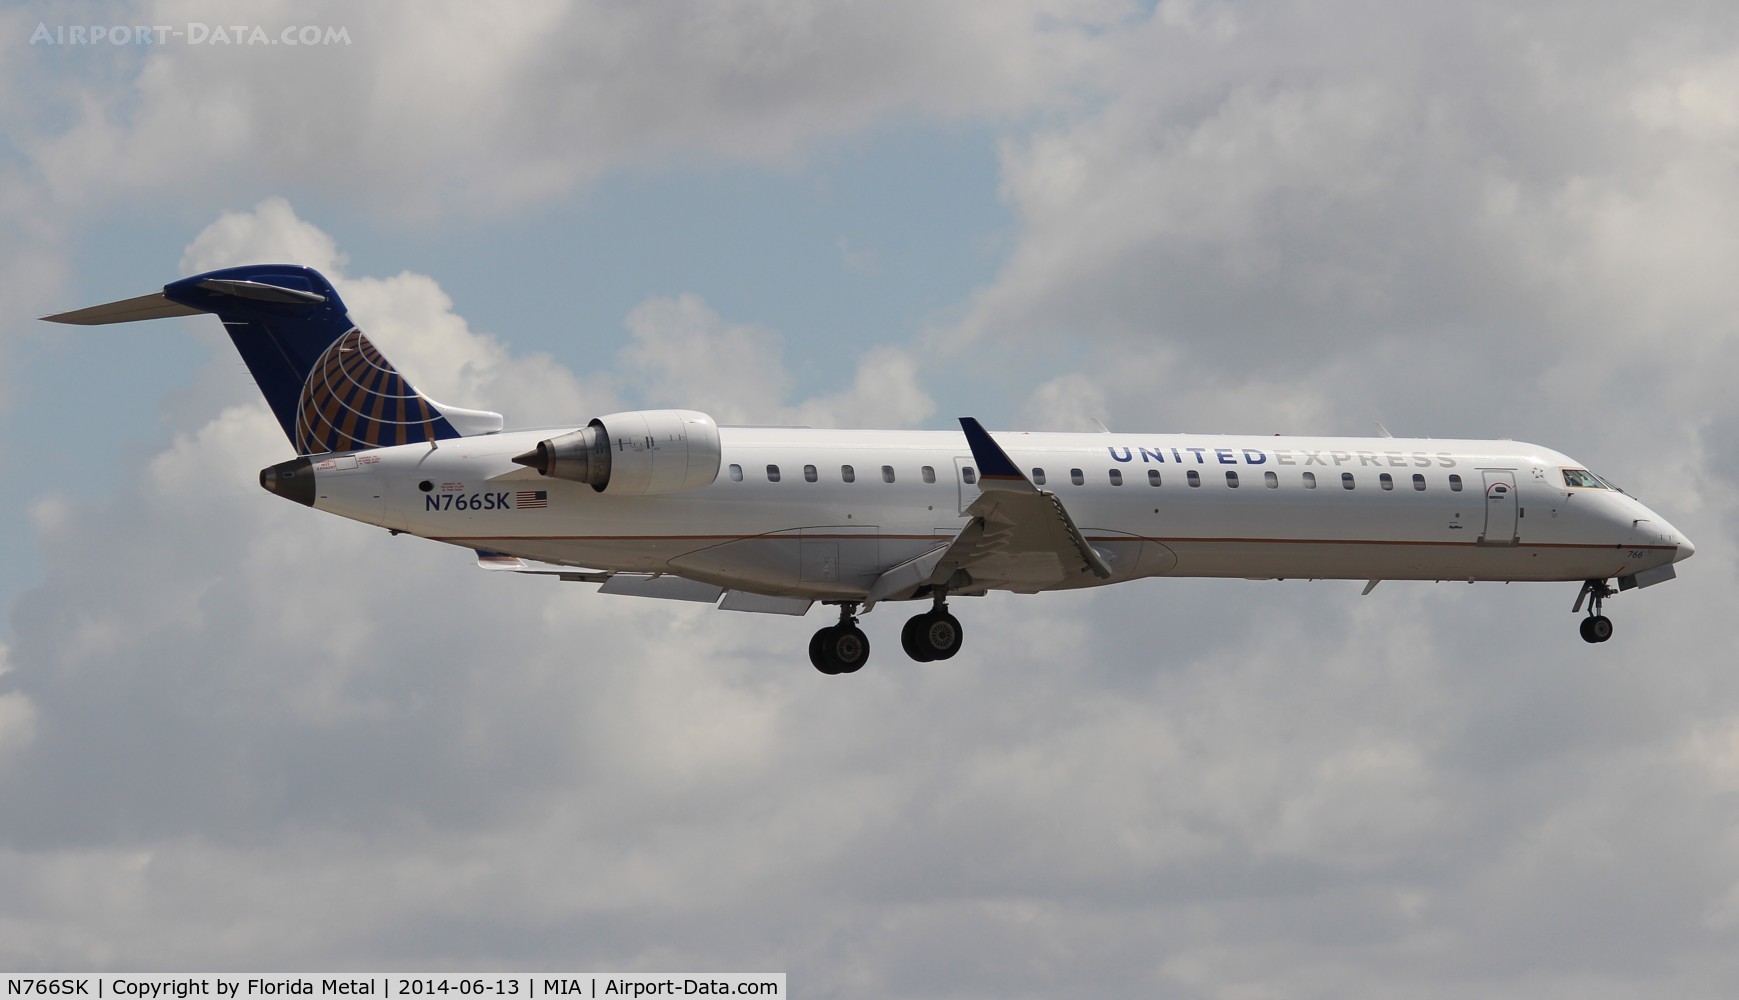 N766SK, 2005 Bombardier CRJ-702 (CL-600-2C10) Regional Jet C/N 10232, United Express